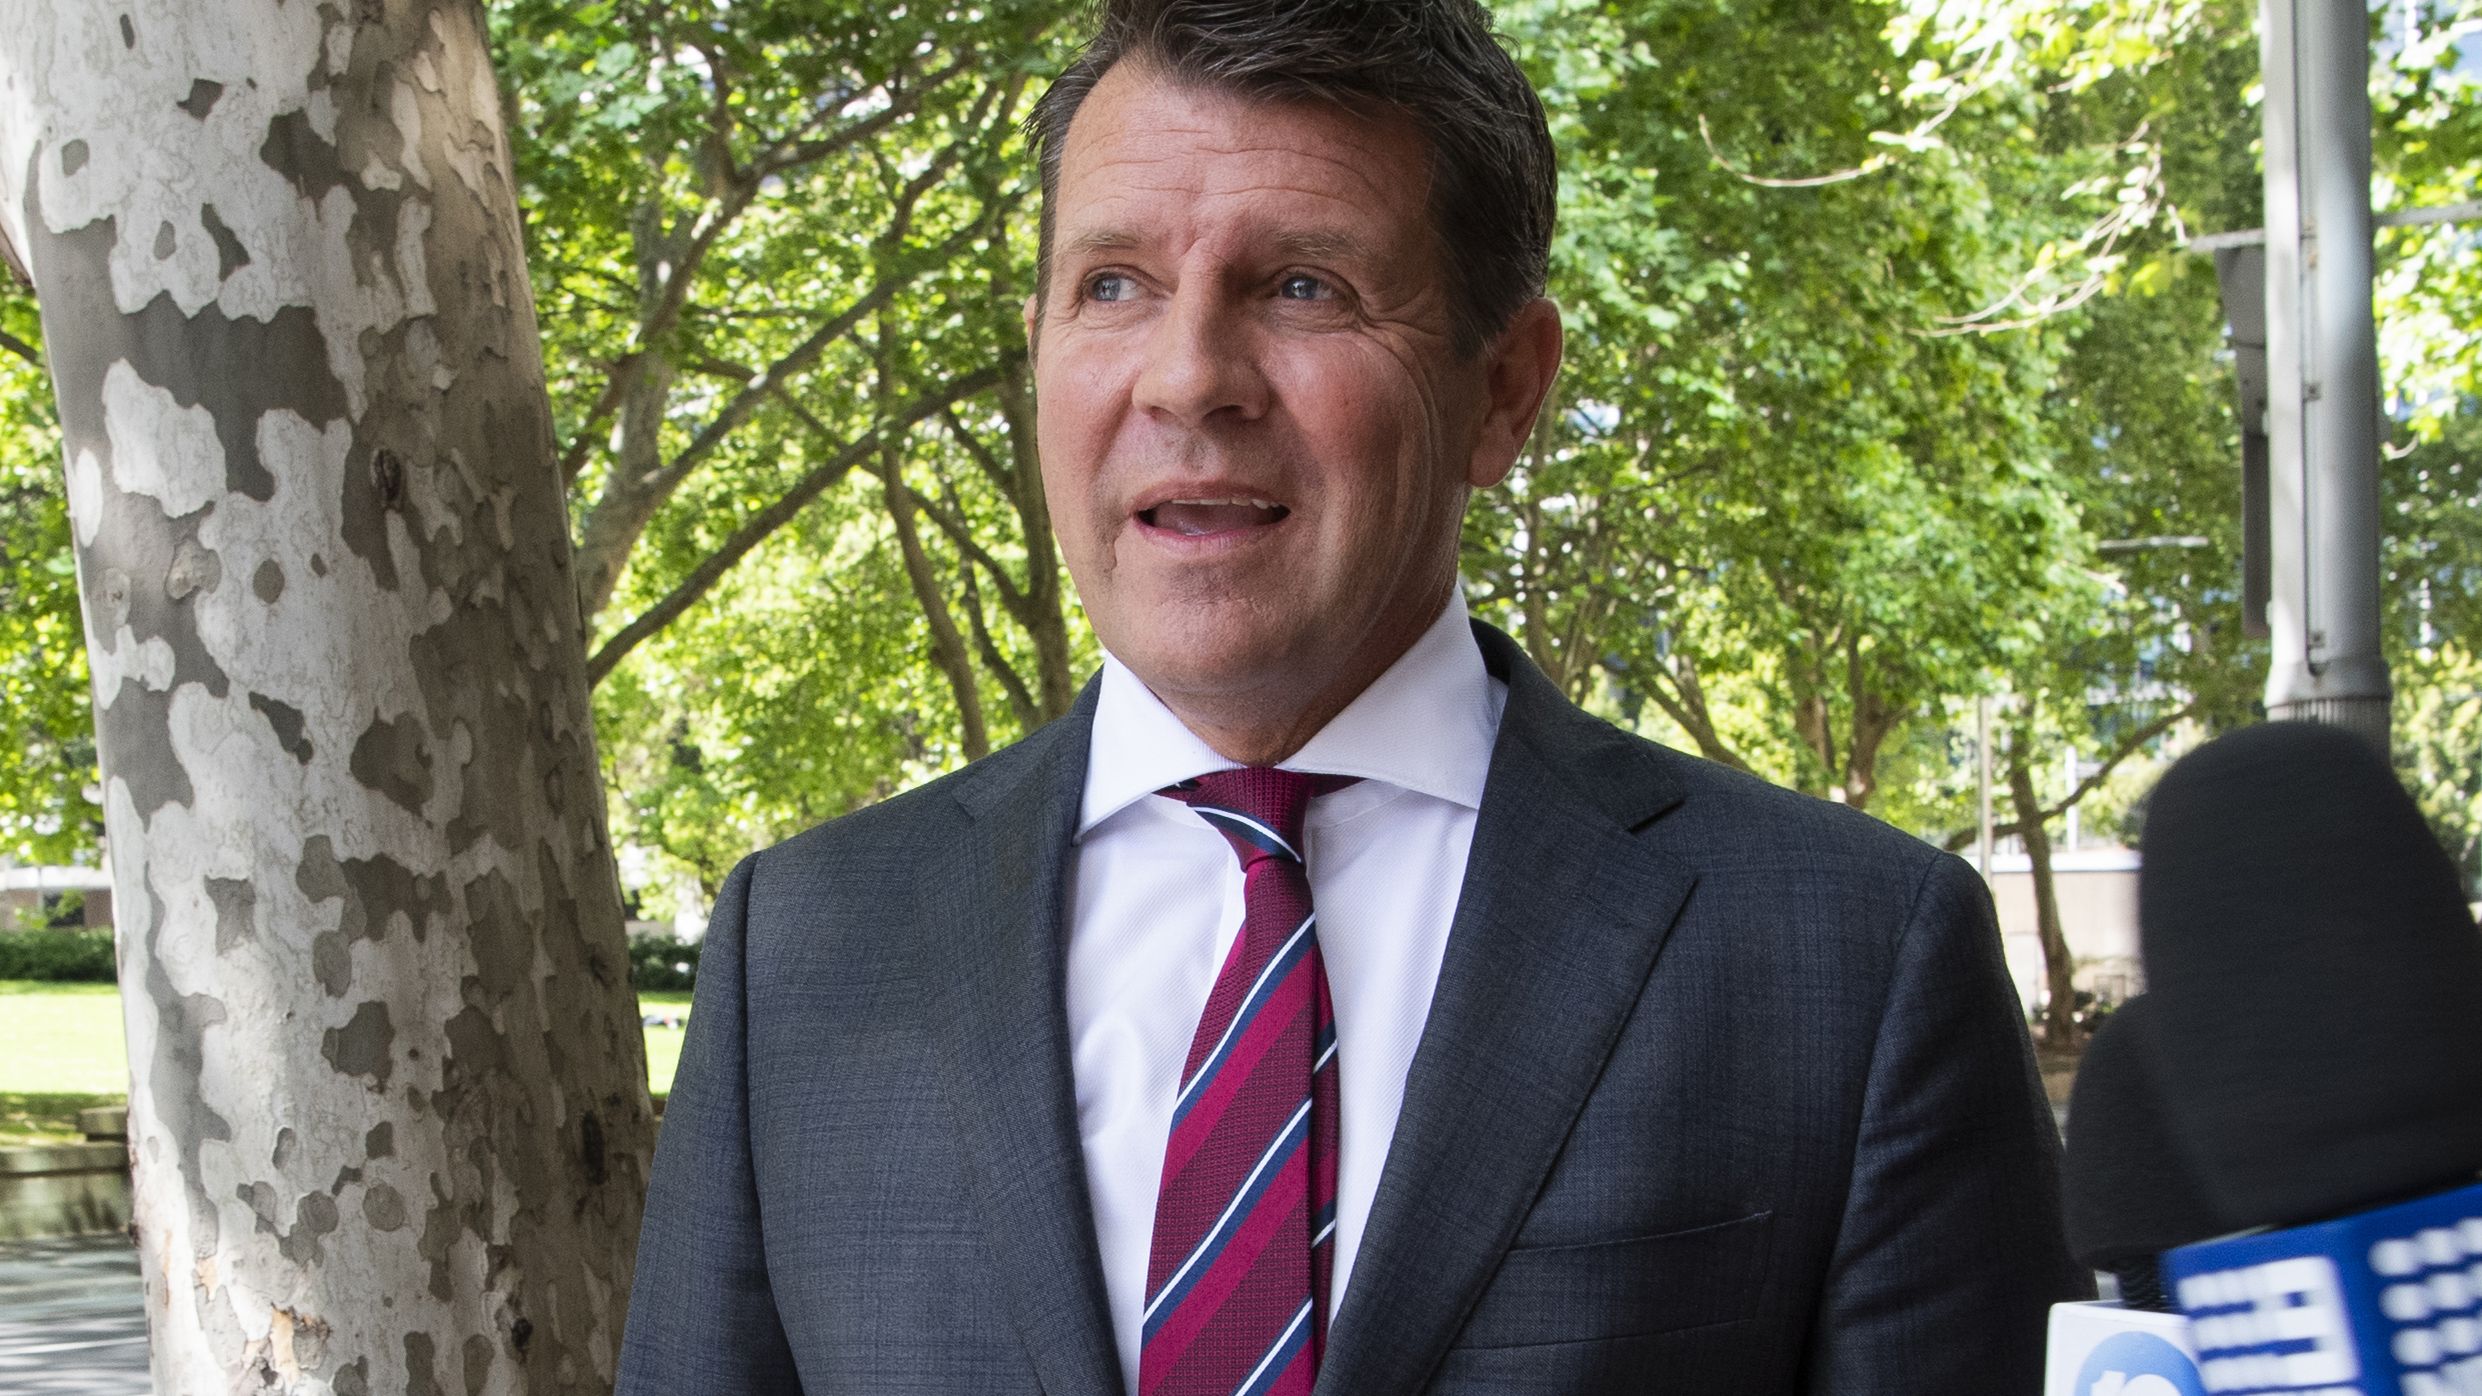 Former NSW premier Mike Baird announced as next Cricket Australia chair